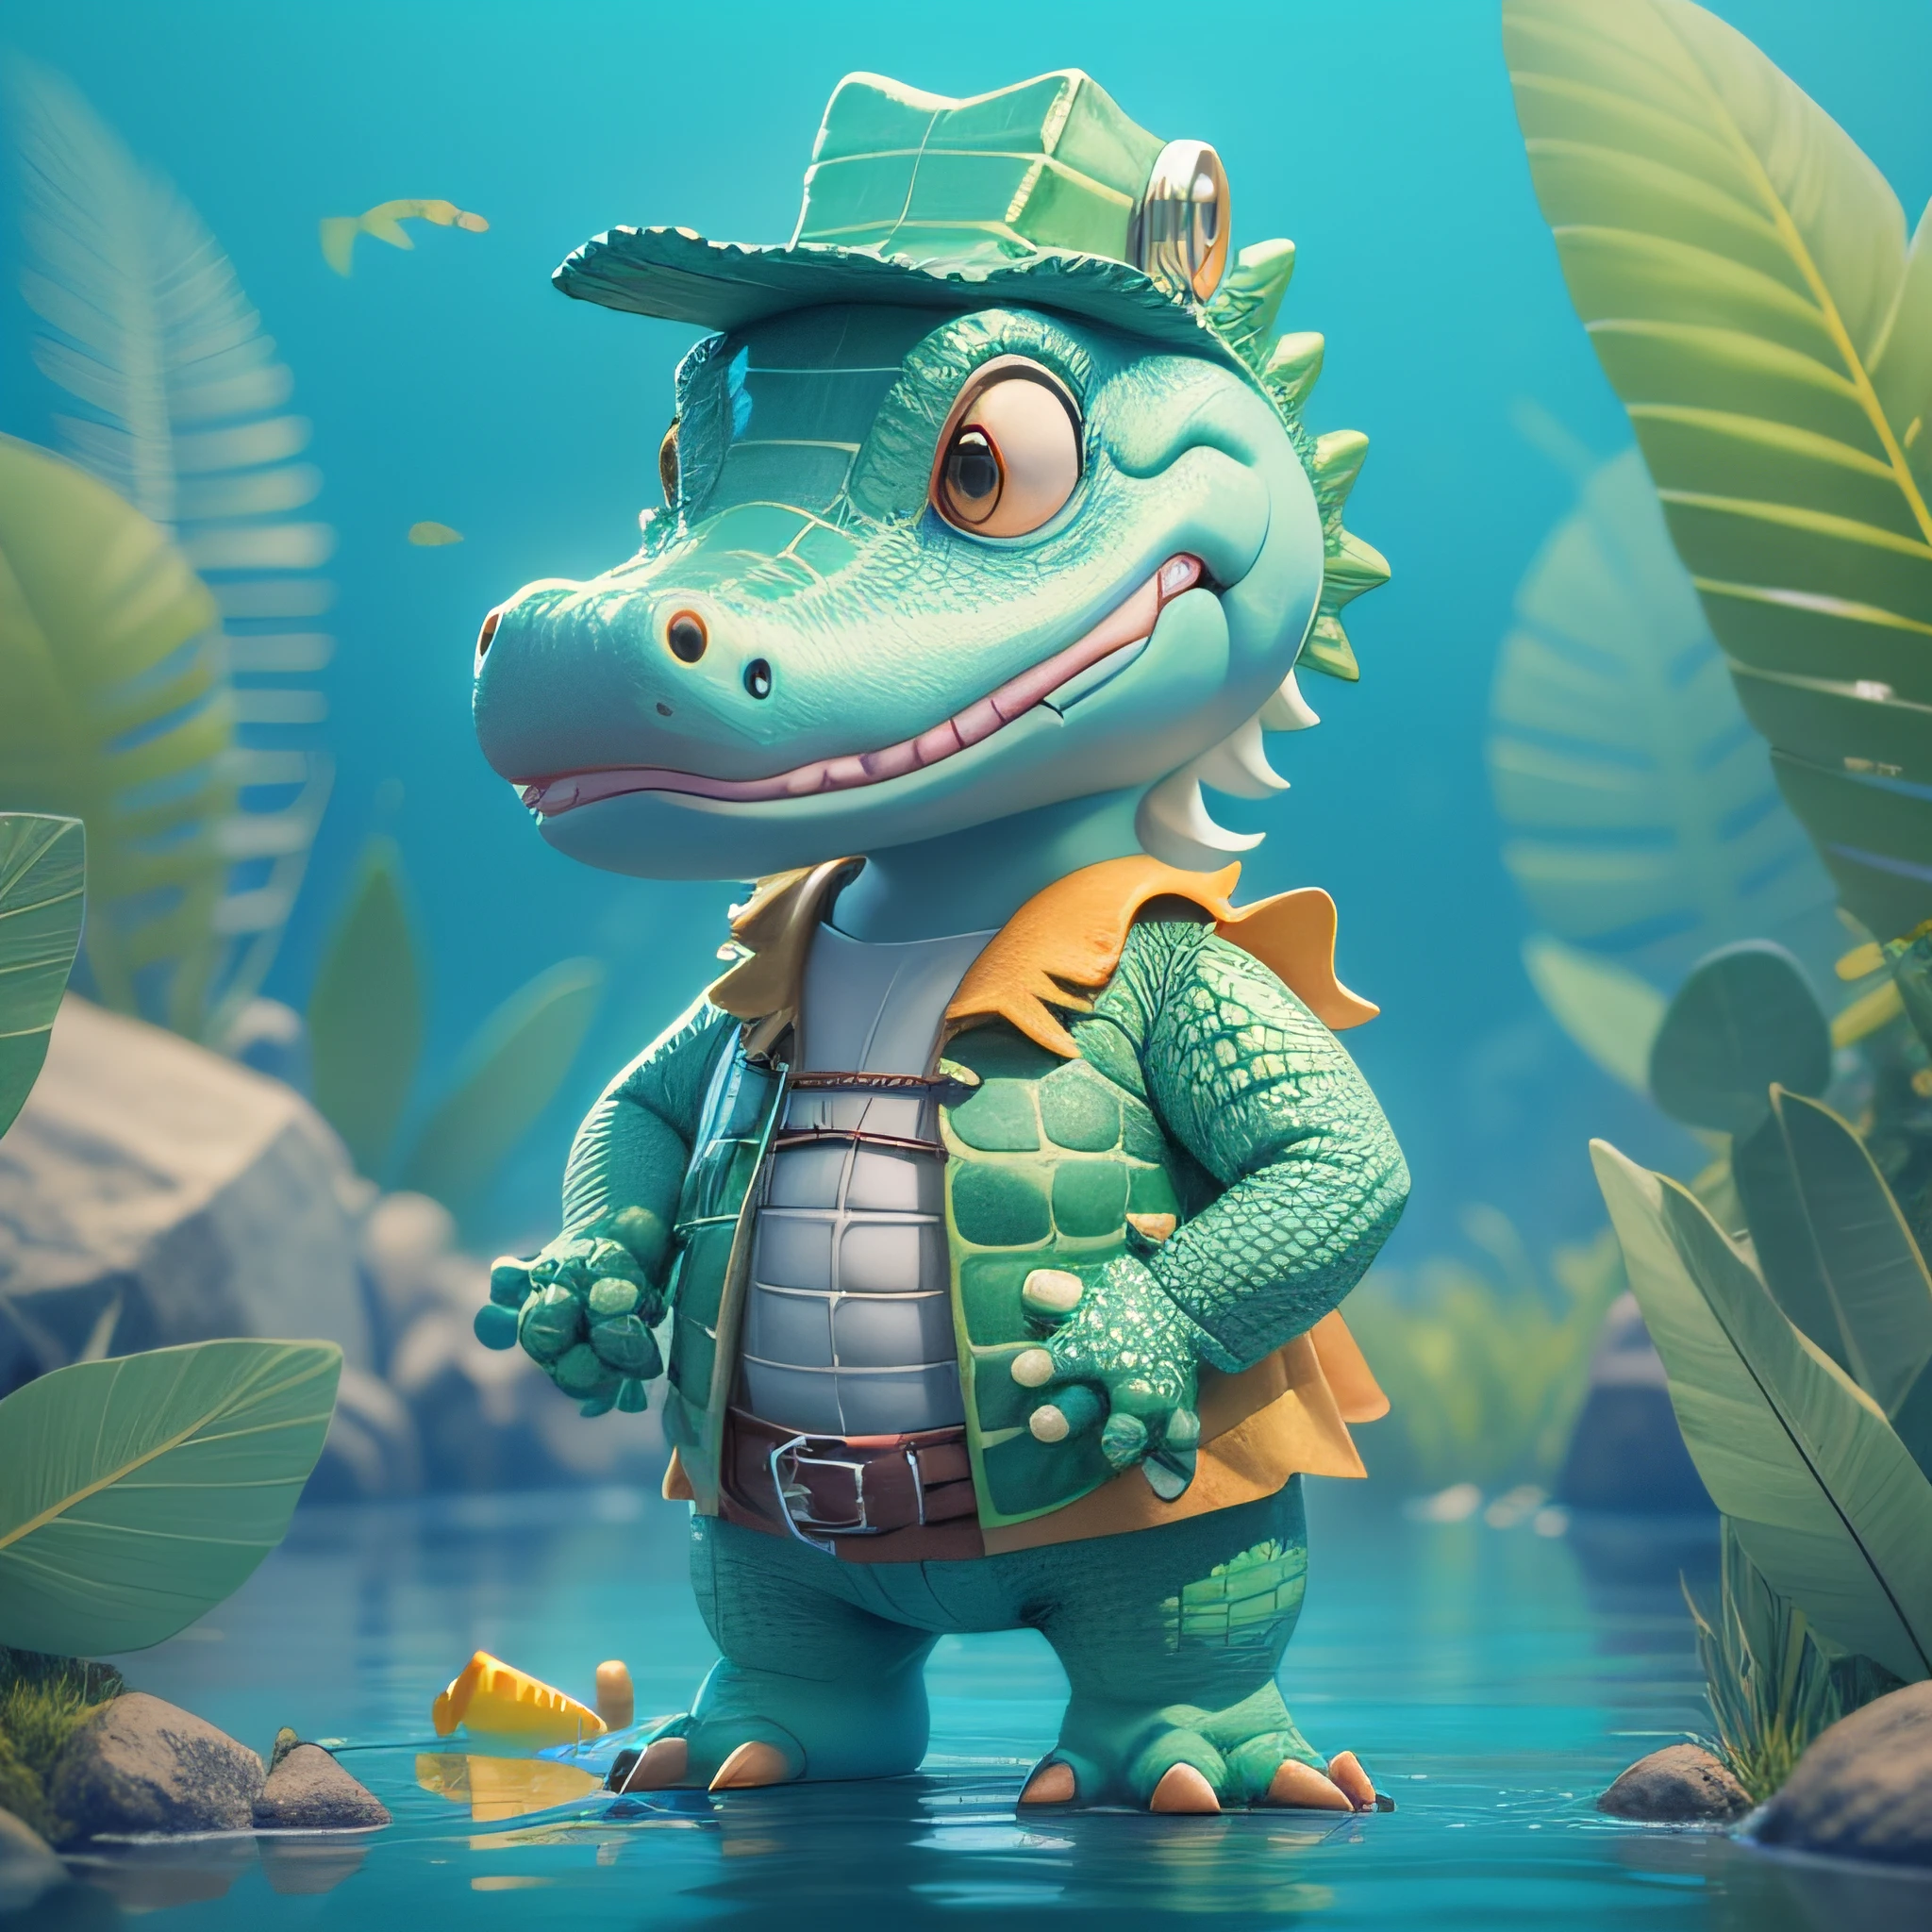 Alligator mignon en rendu 3D très détaillé avec costume de pêcheur, style de dessin animé pour enfants, textures très détaillées, textures douces et lisses, dégradé de couleurs des rivières aquatiques en arrière-plan.